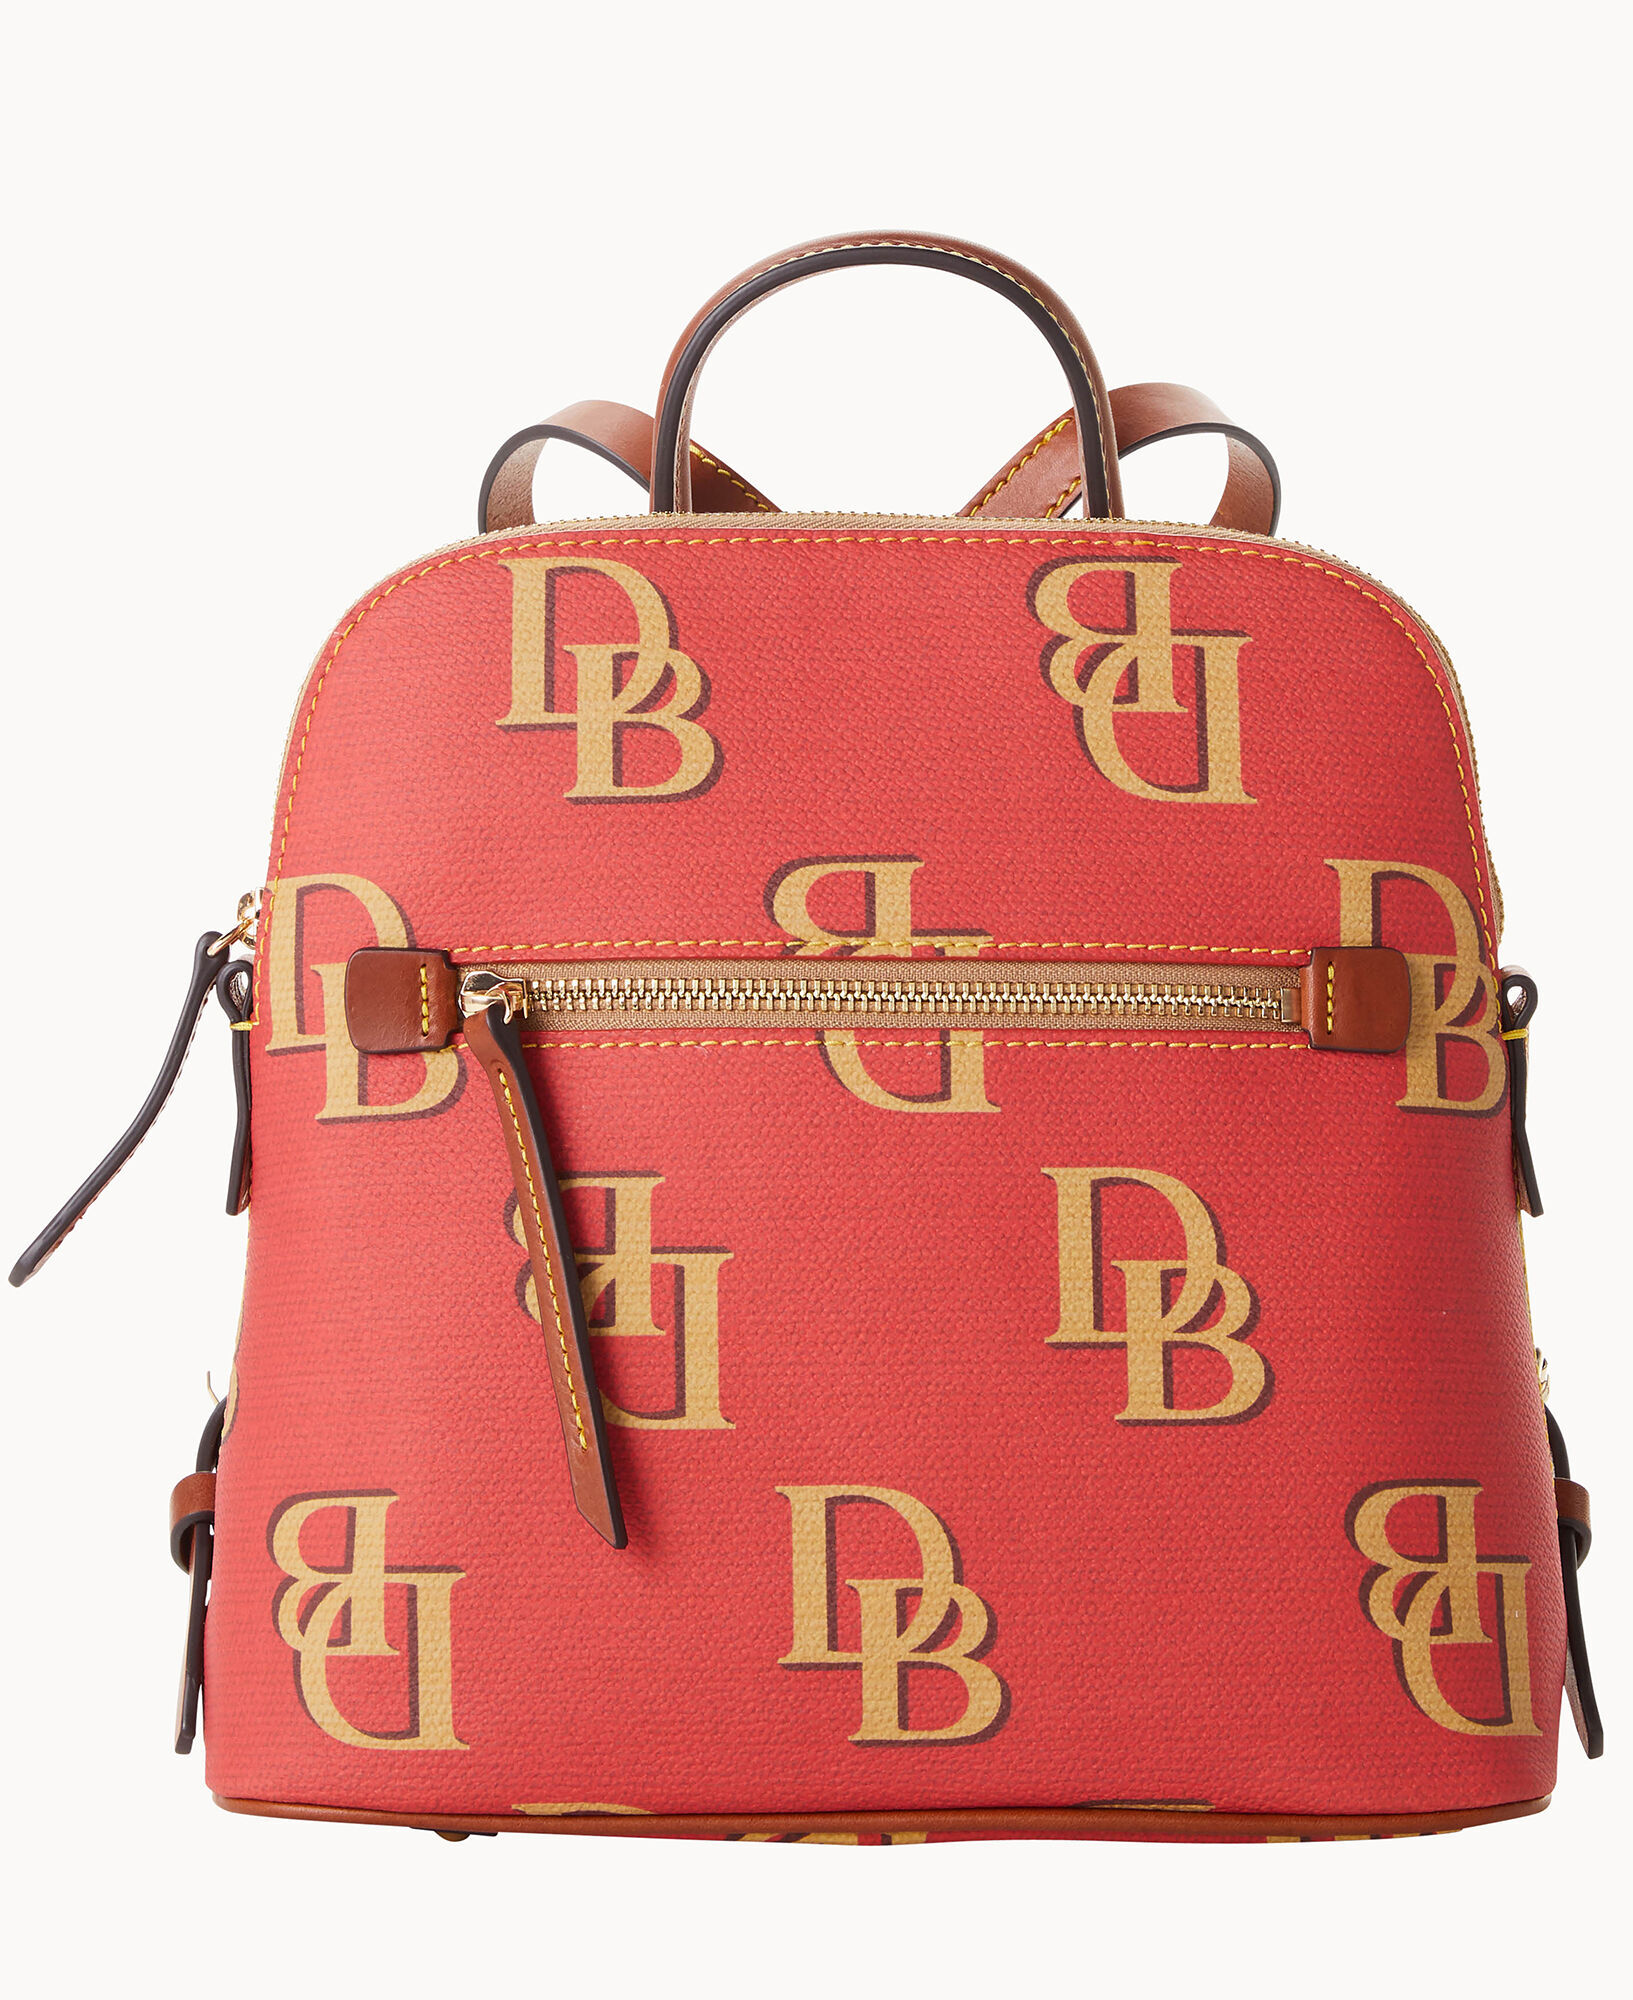 Dooney & Bourke Monogram Backpack